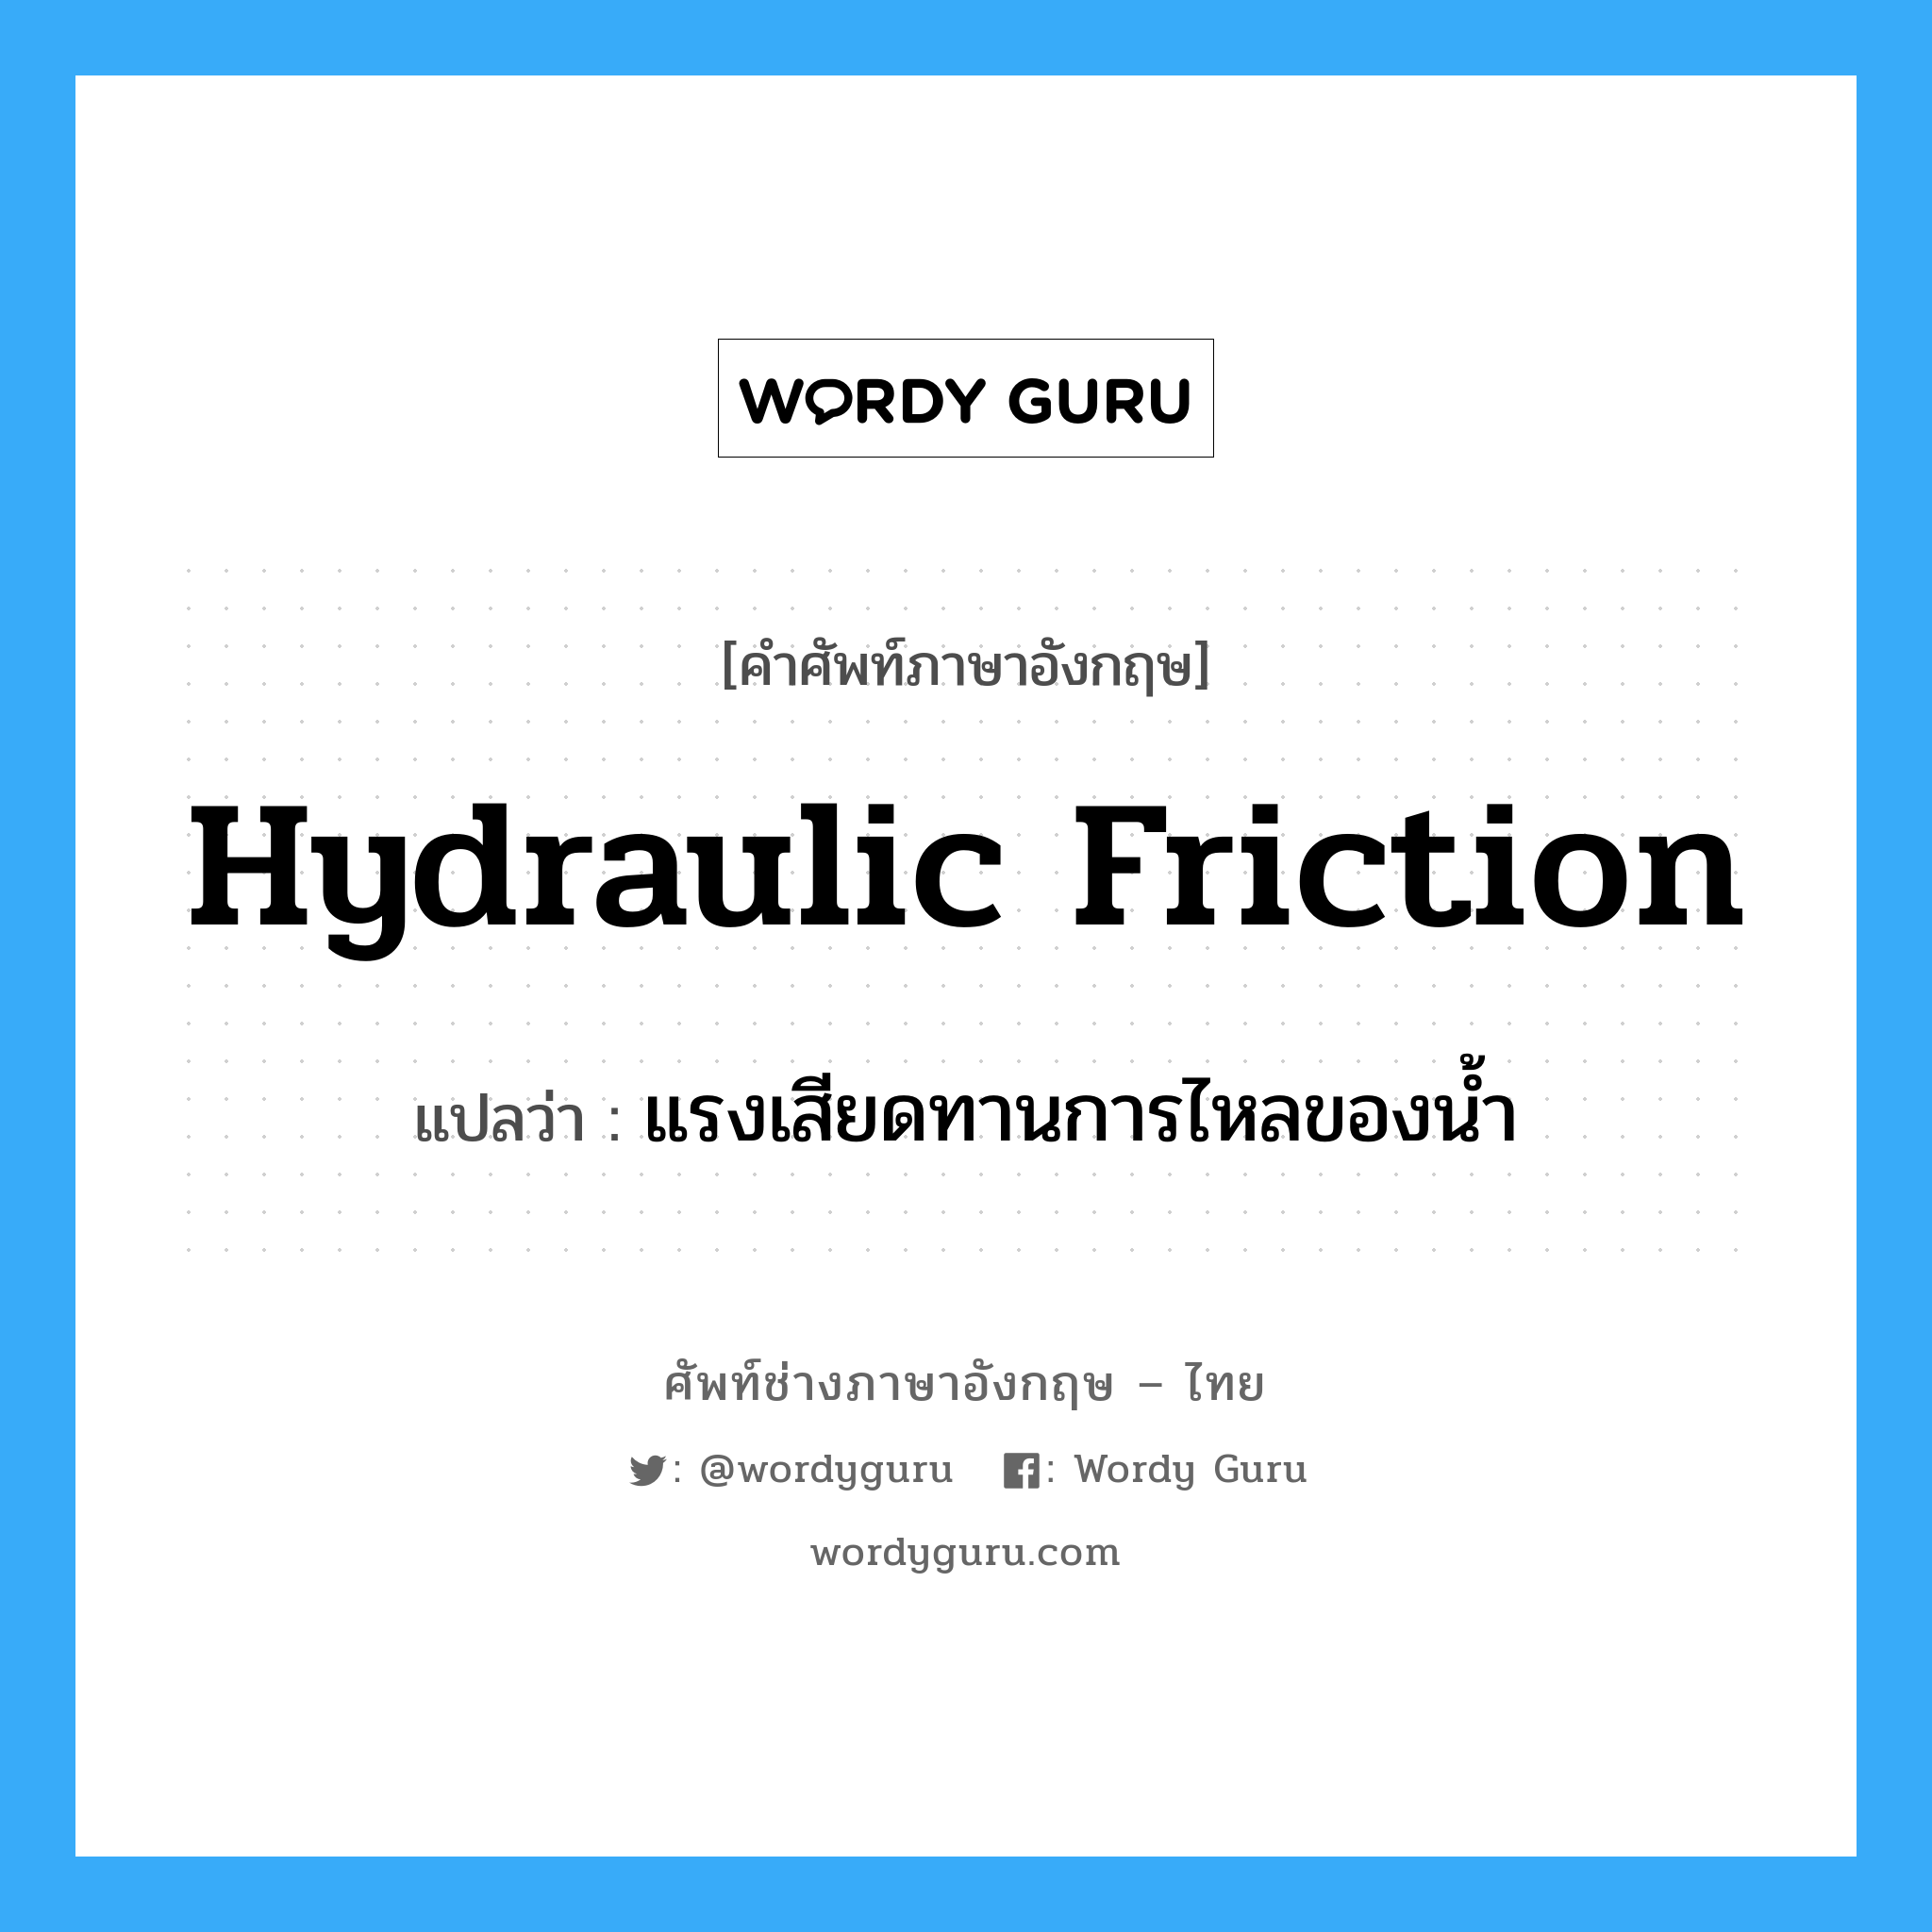 hydraulic friction แปลว่า?, คำศัพท์ช่างภาษาอังกฤษ - ไทย hydraulic friction คำศัพท์ภาษาอังกฤษ hydraulic friction แปลว่า แรงเสียดทานการไหลของน้ำ